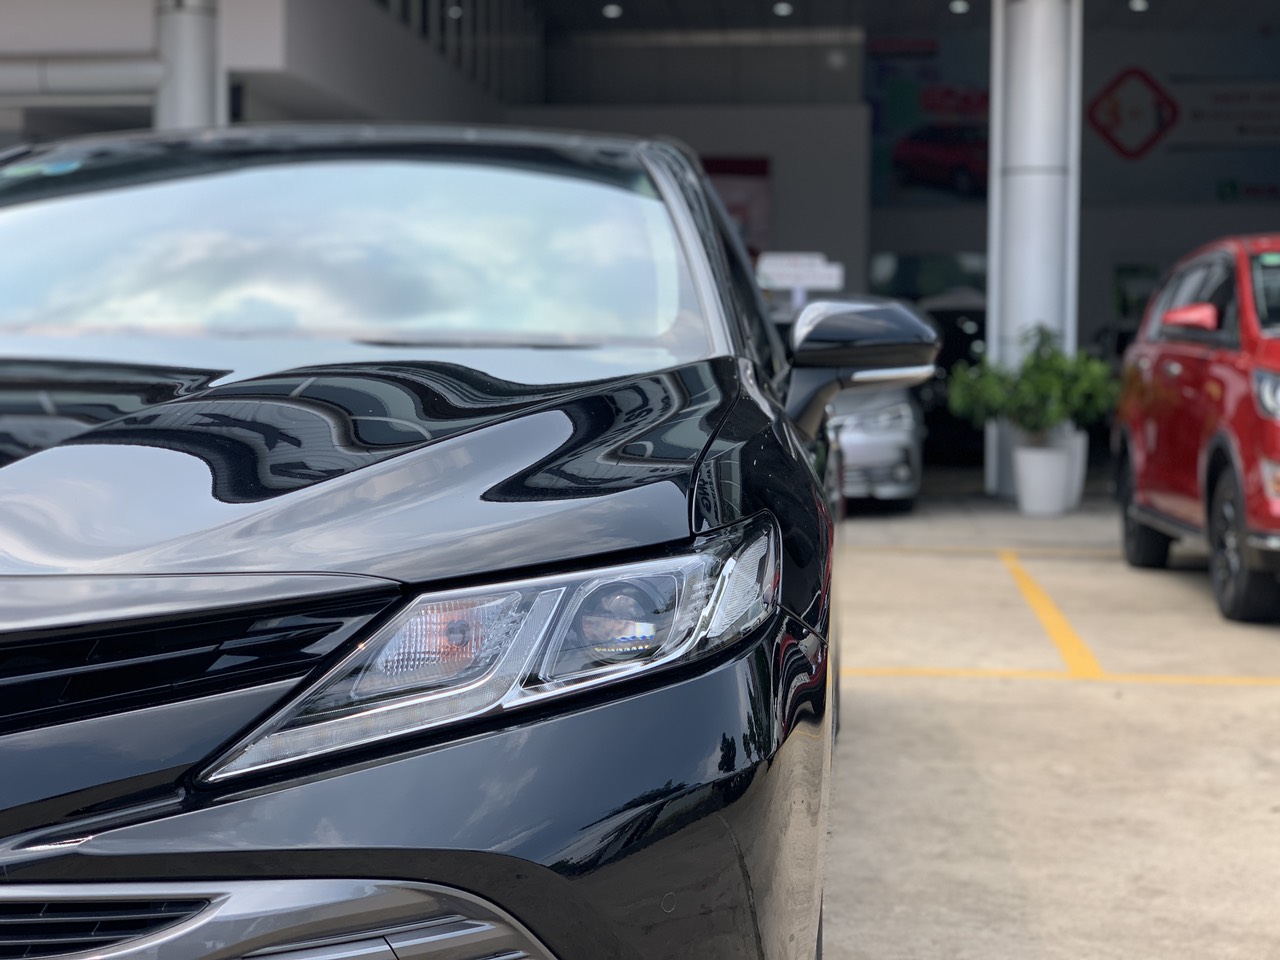 Toyota Camry 2.0G 2019 - Cần bán gấp Toyota Camry 2.0G sản xuất 2019, màu đen, nhập khẩu nguyên chiếc